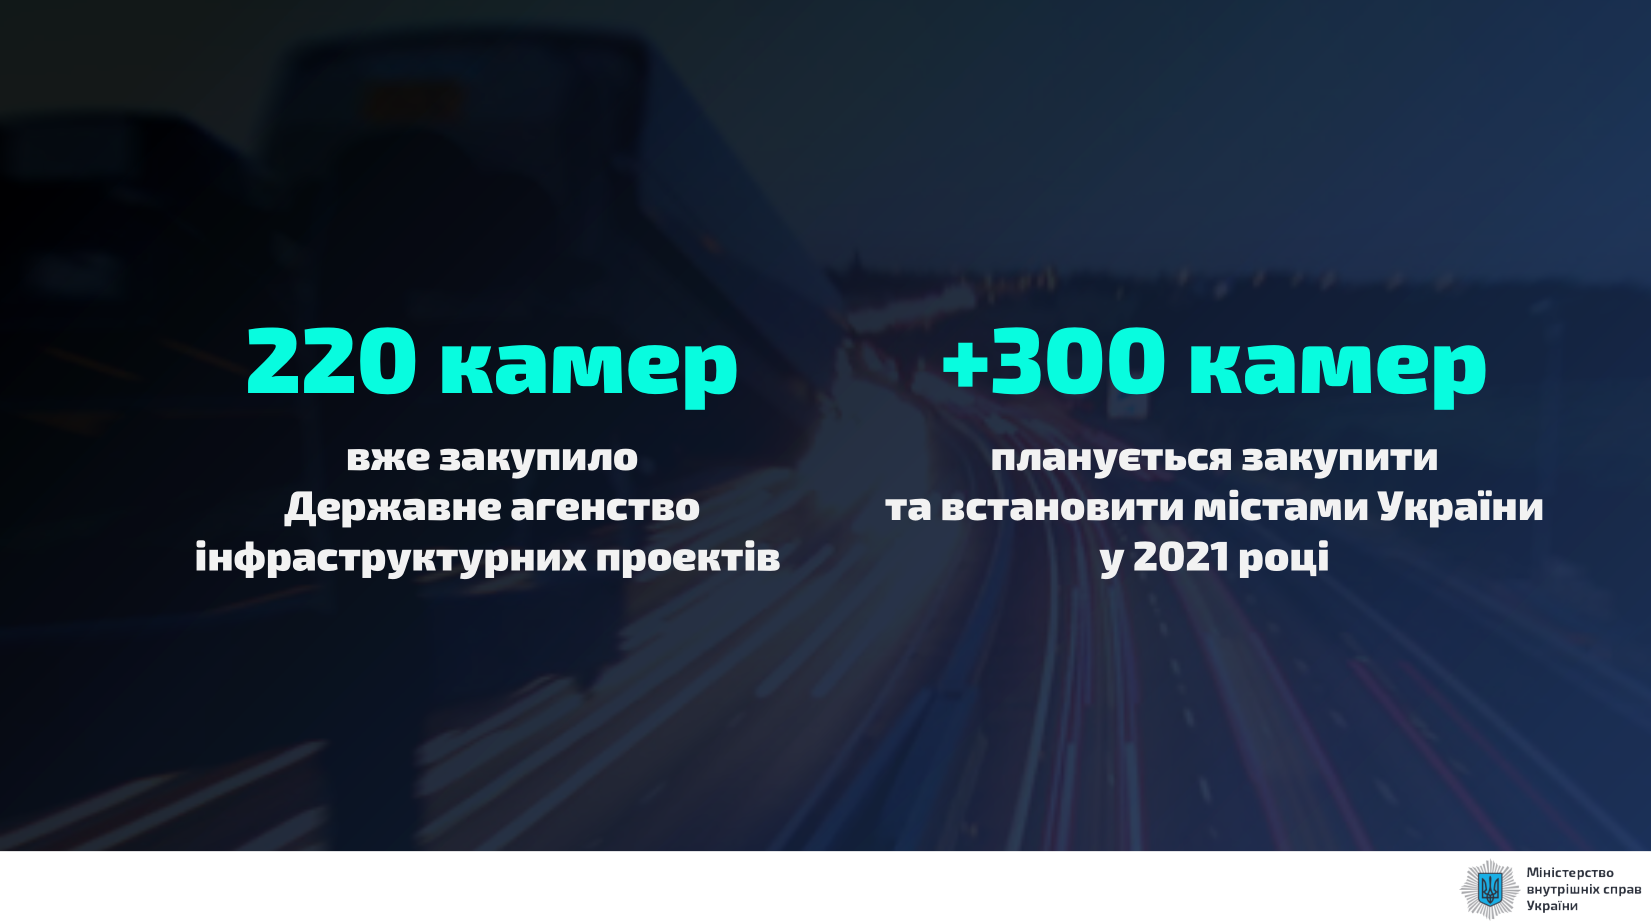 В 2021 году в Украине установят 300 новых камер автофиксации.